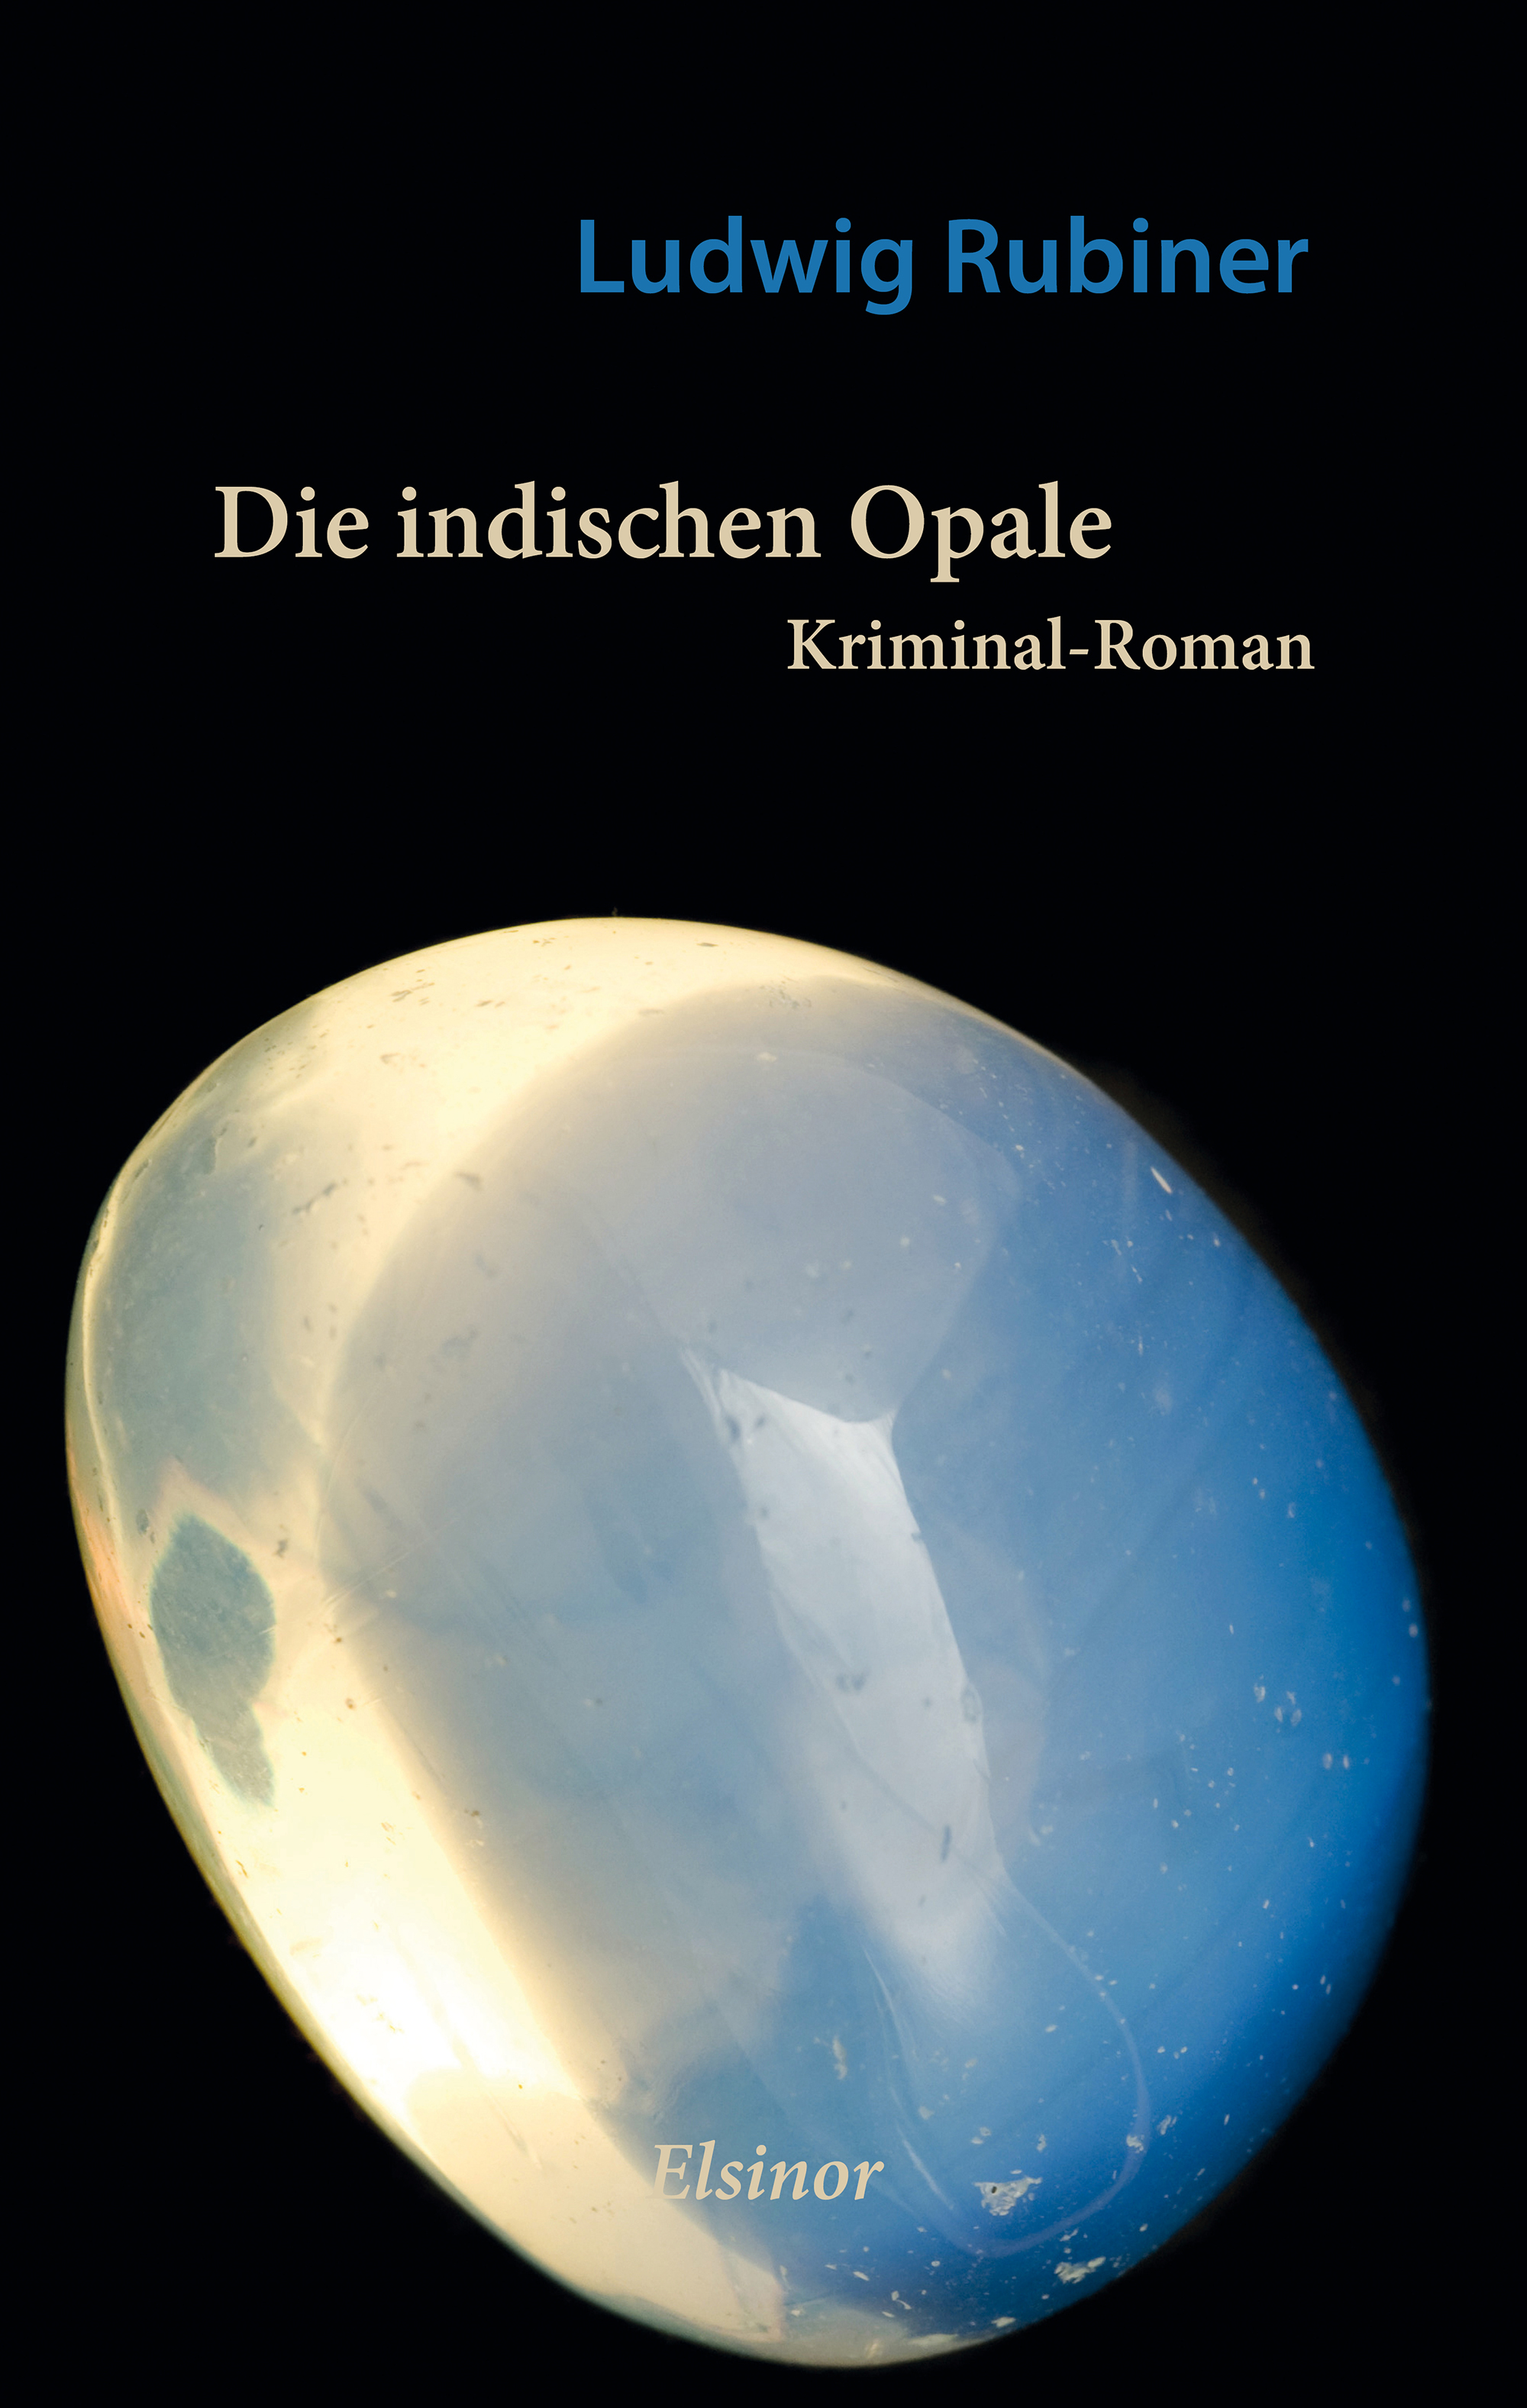 Die indischen Opale - Kriminal-Roman